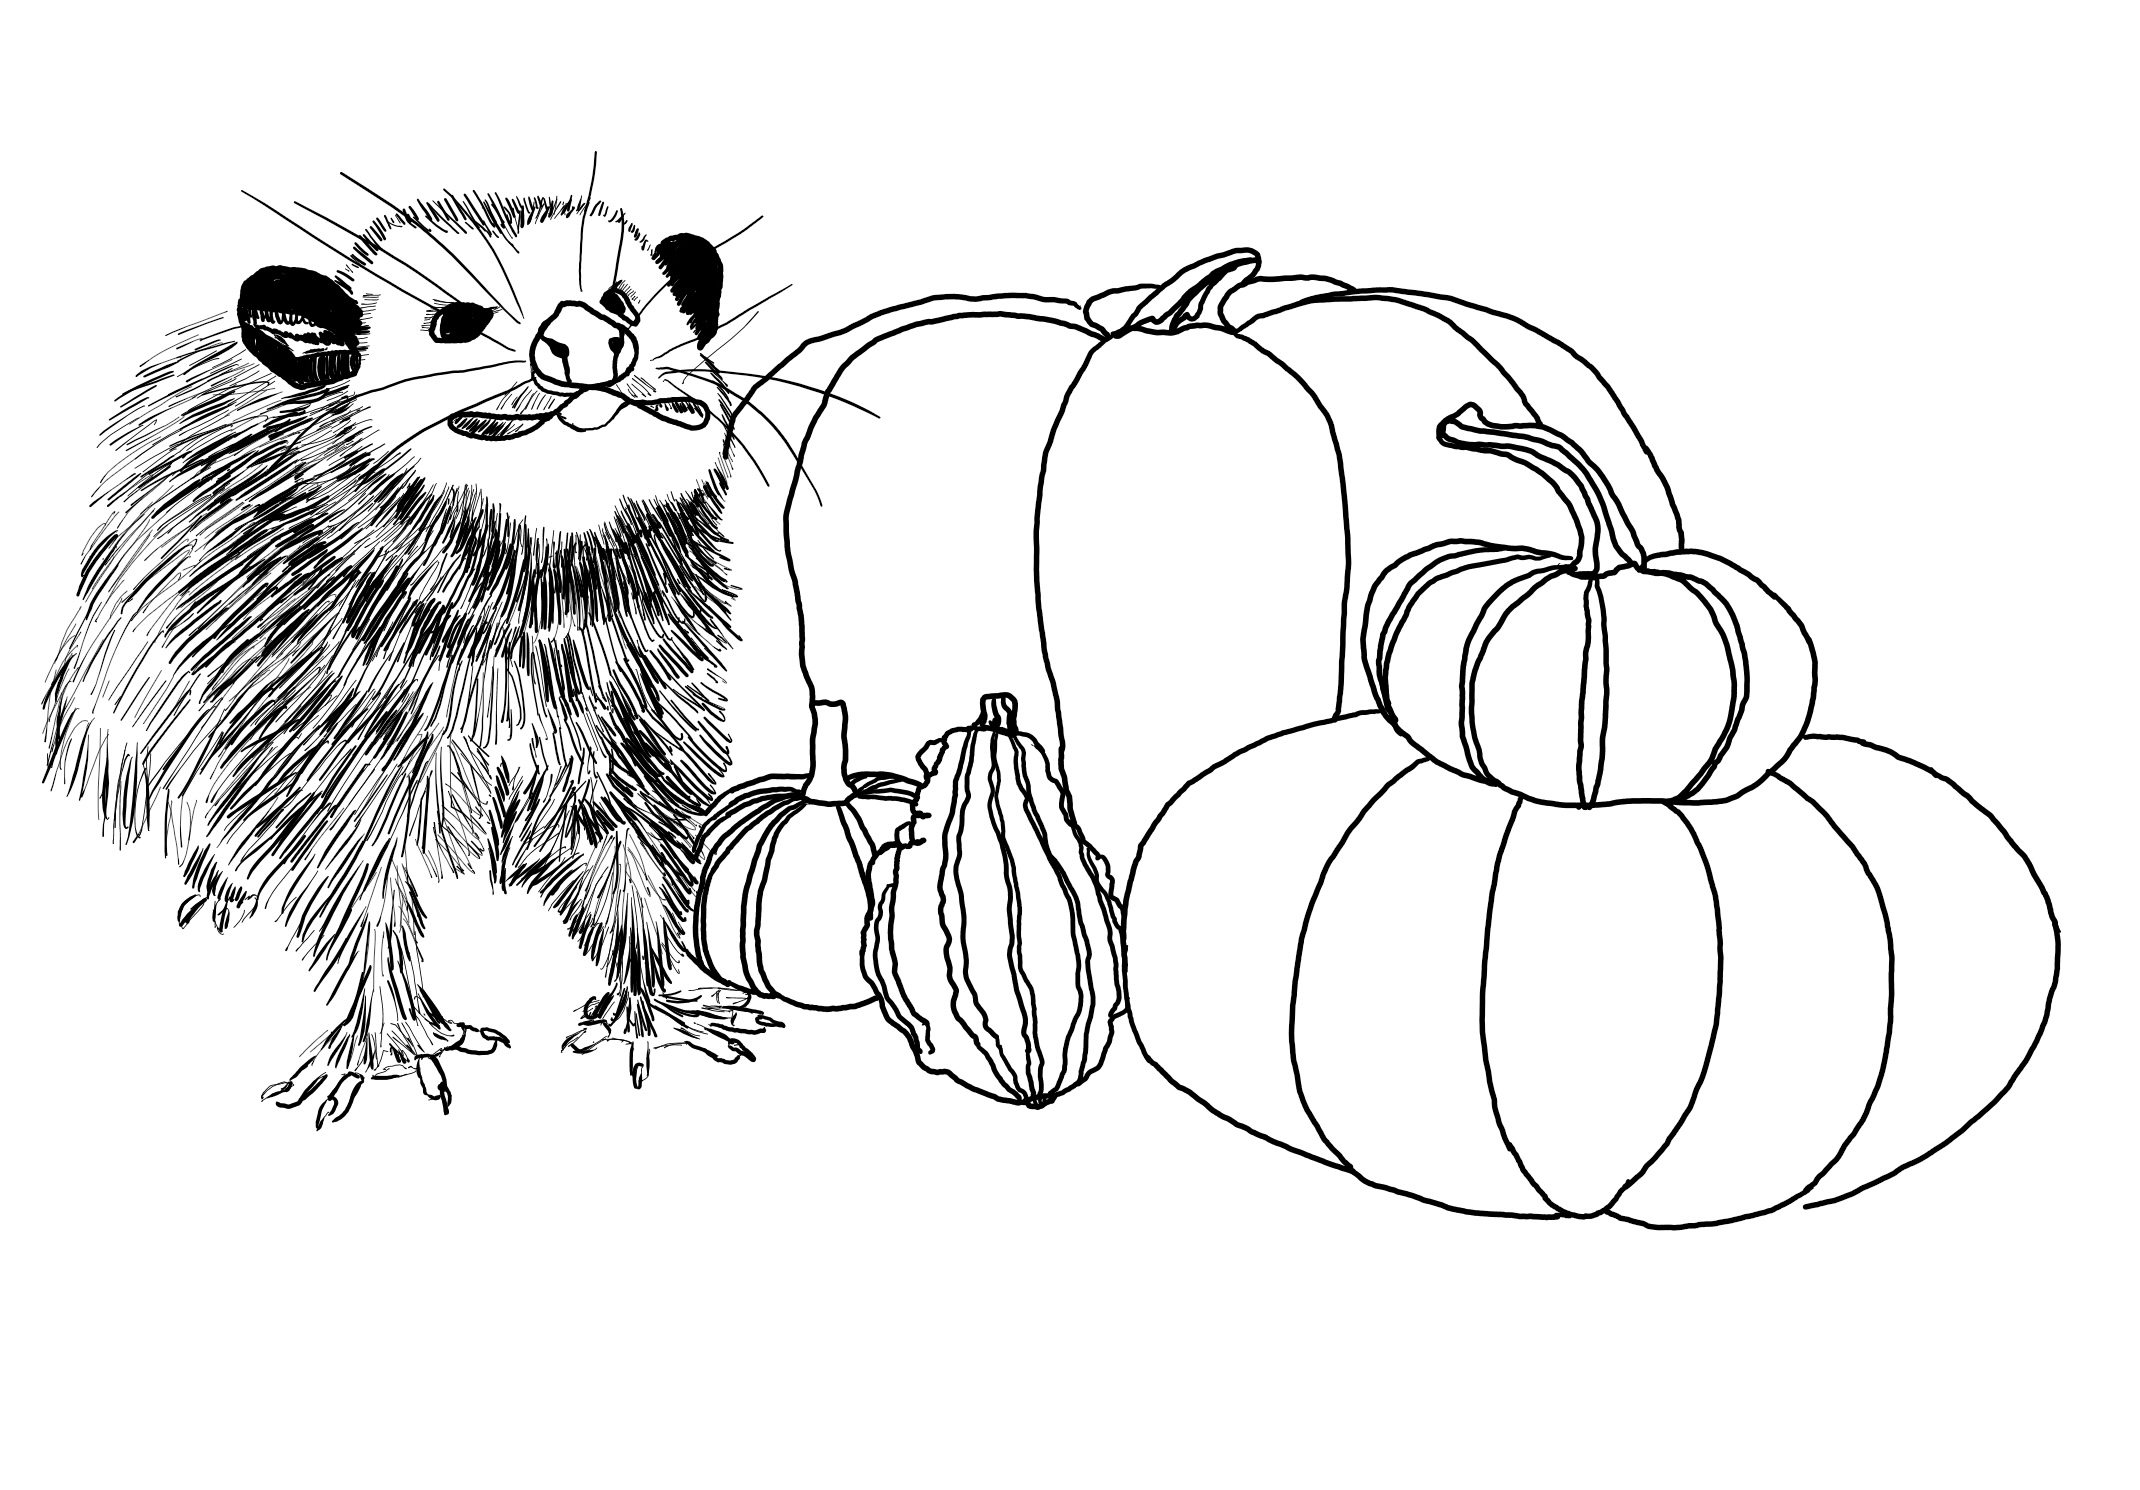 A sketch of a possum next to pumpkins